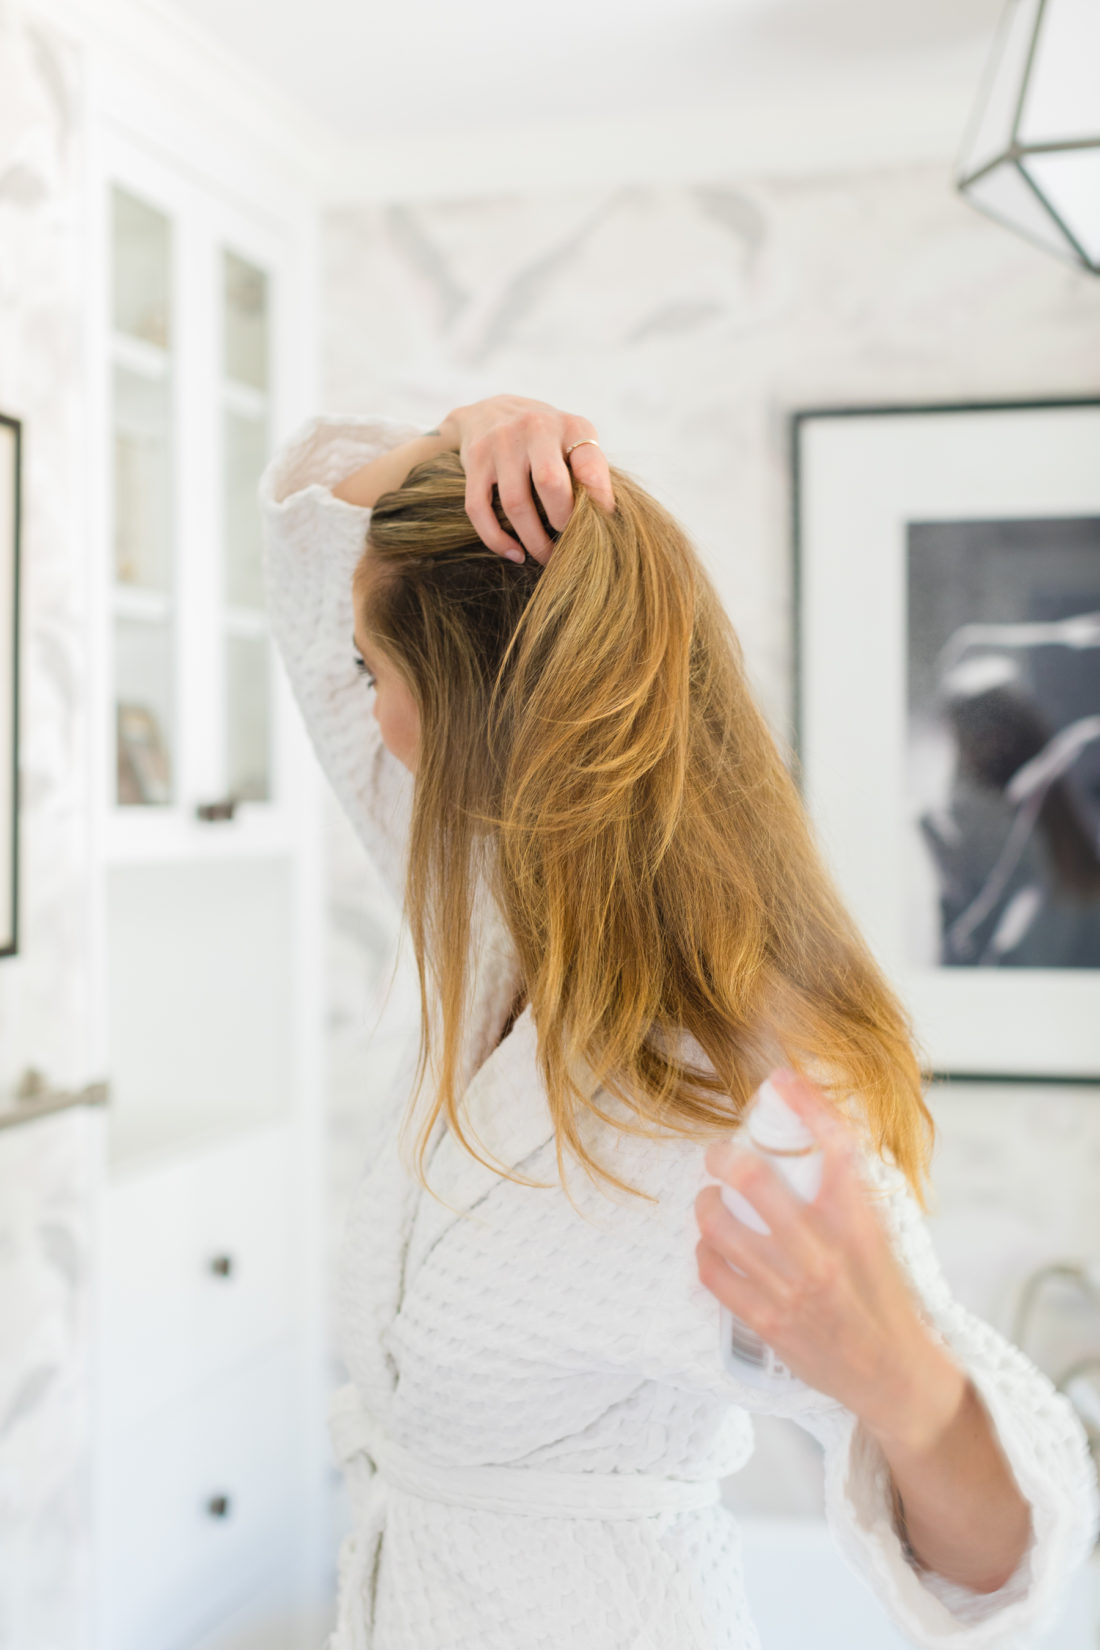 Eva Amurri shares how she's revitalizing her postpartum hair